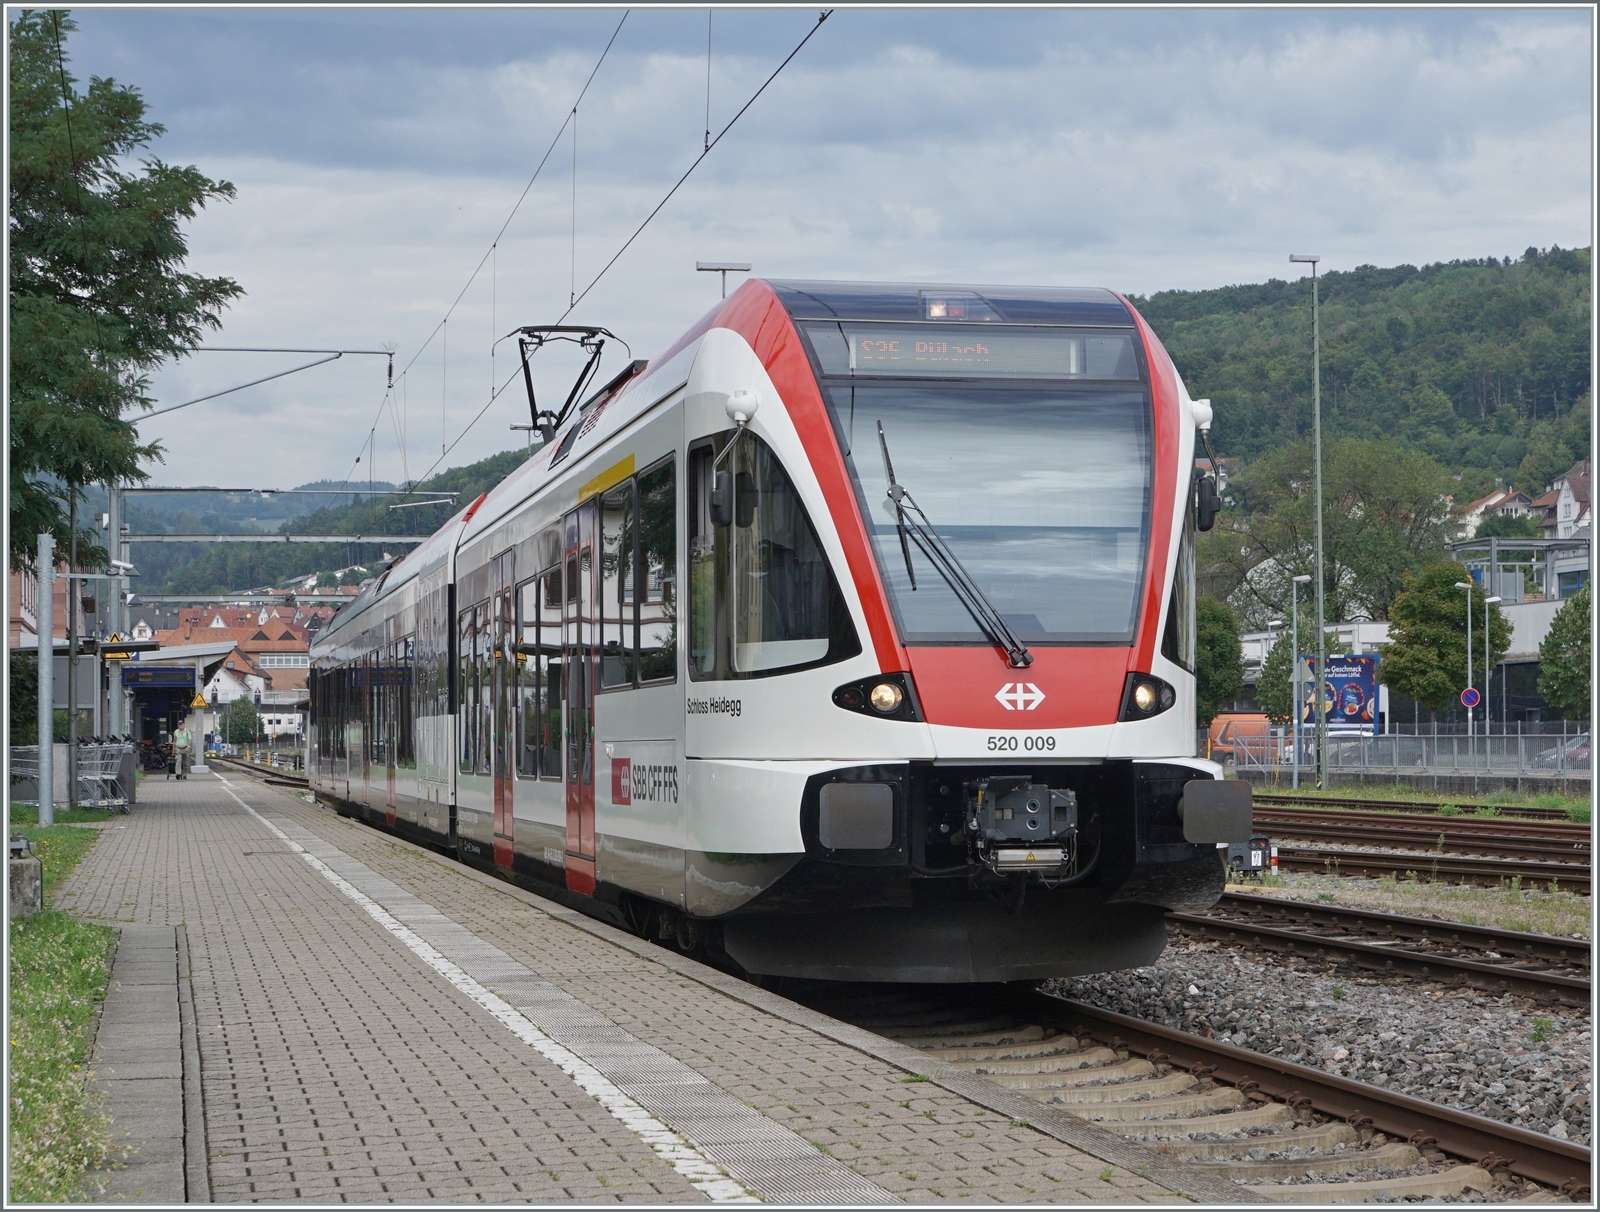 Im deutschen Waldshut wartet der Schmaltriebwagen RABe 520 009 als S-Bahn nach Bülach auf die Abfahrt. Die Schmaltriebwagen wurden für die Seetalbahn bestellt, da dort Profileinschränkungen geplant waren, die aber glücklicherweise nicht ausgeführt wurden.

6. September 2022